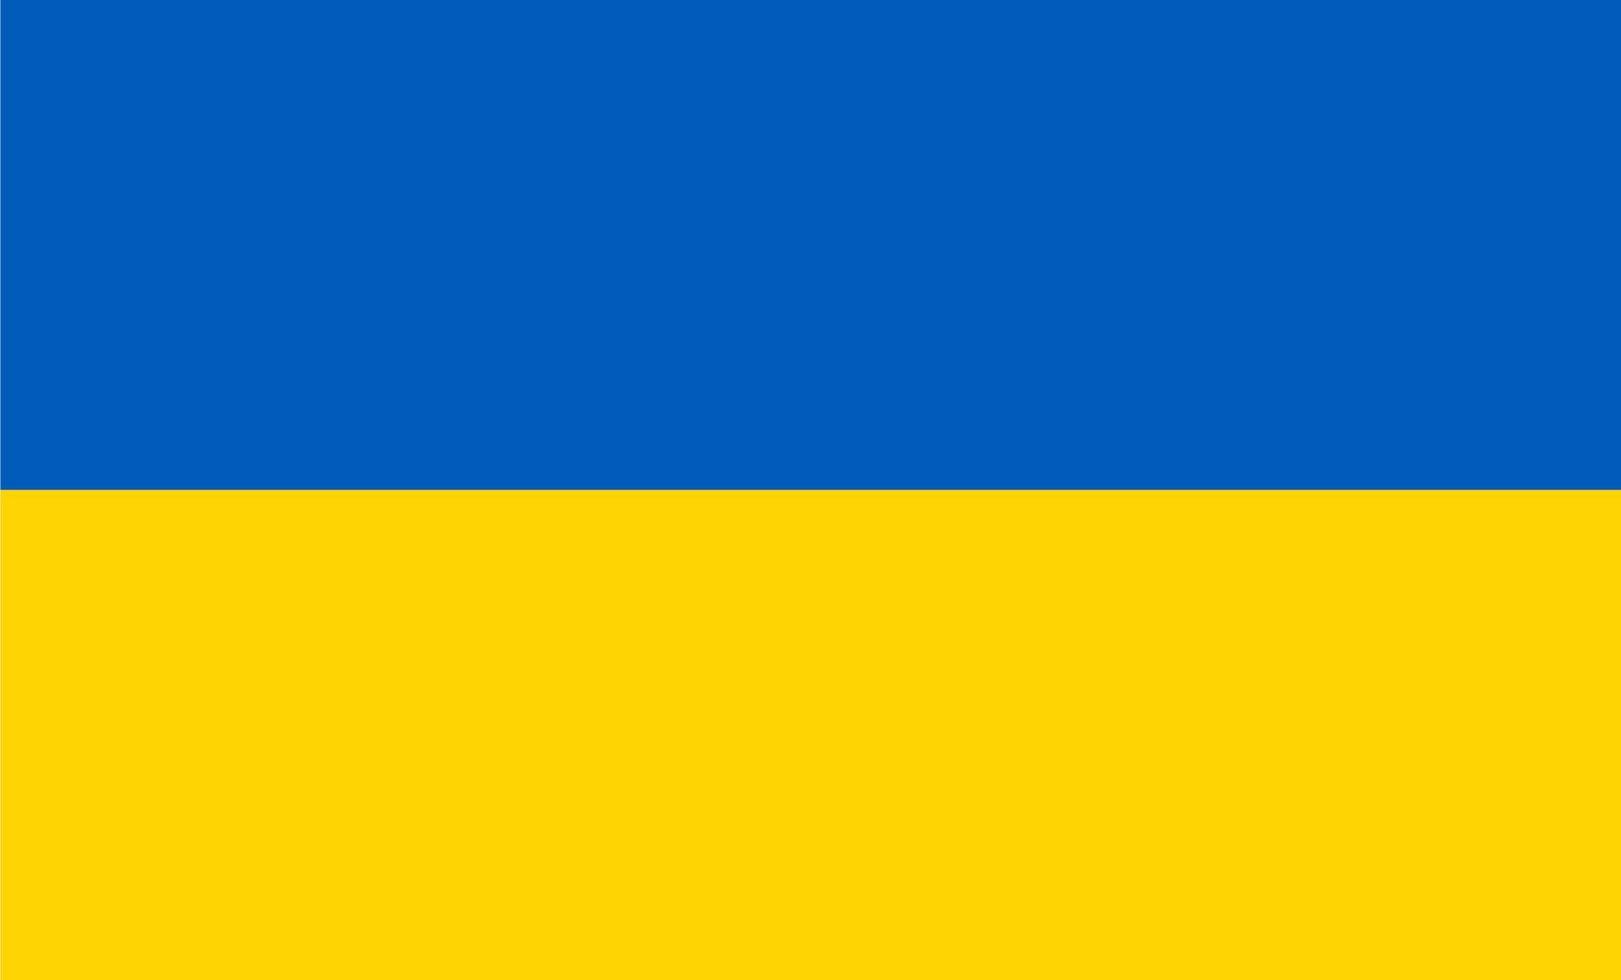 ukrainska flaggan, ukrainska flaggan av hög kvalitet vektor